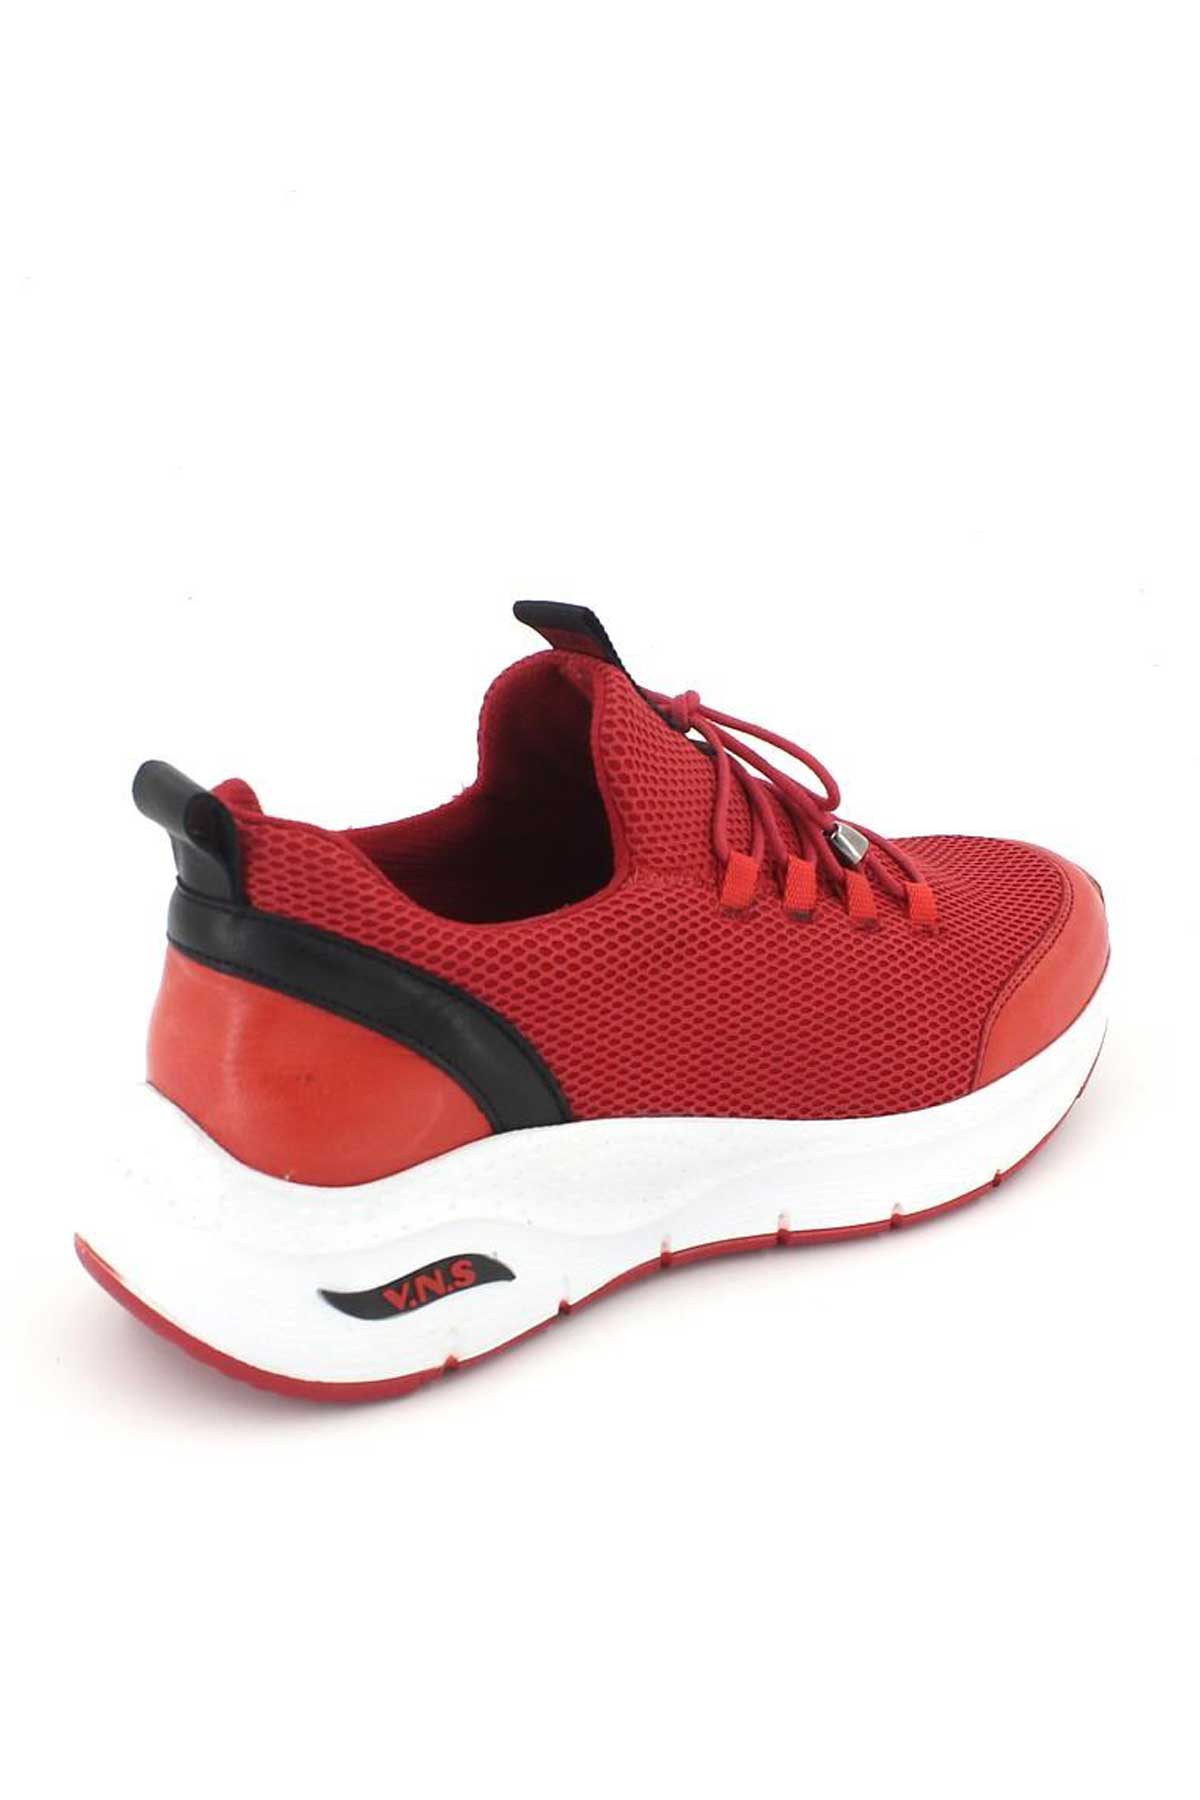 Kadın Sneakers Kırmızı 2115004Y